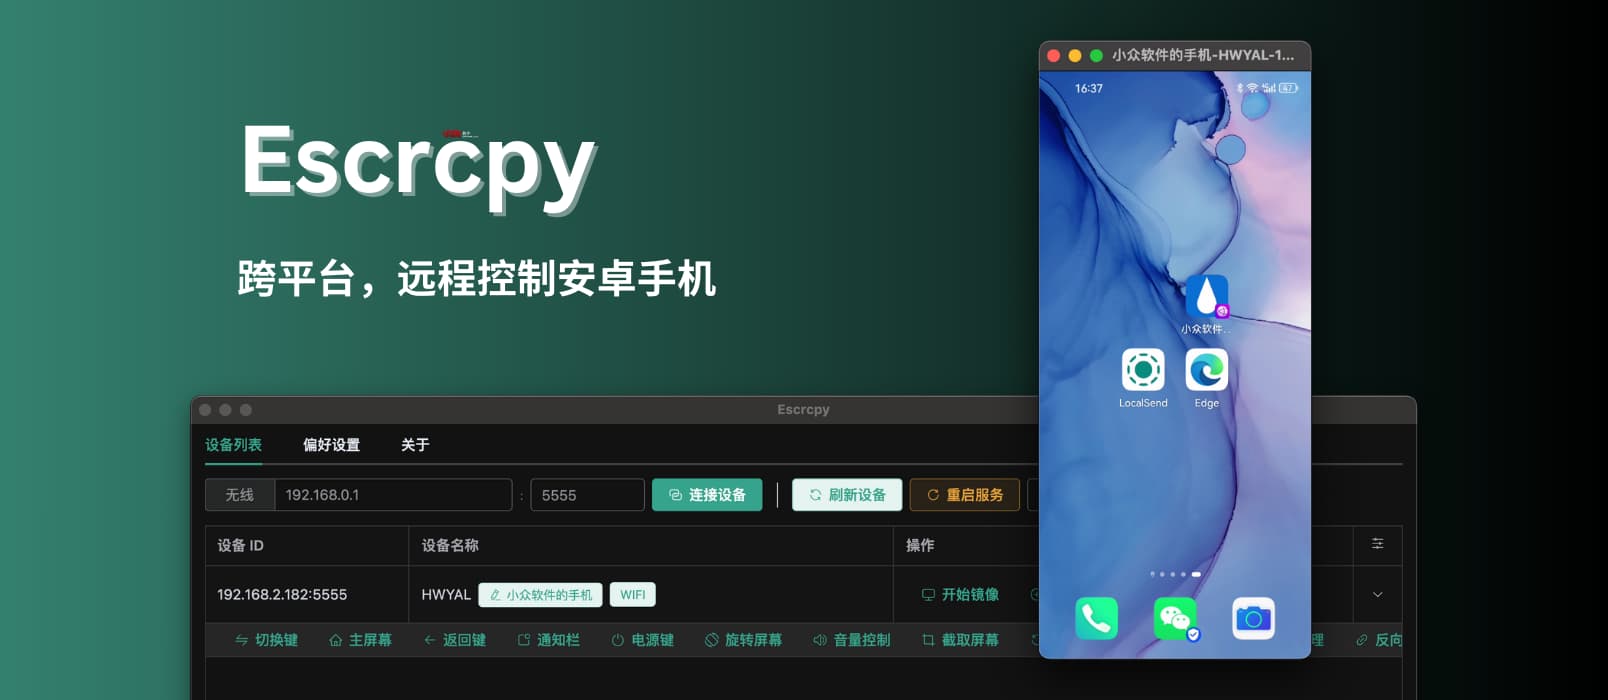 Escrcpy - 跨平台，远程控制安卓手机：3 天前更新，使用 Electron 的 Scrcpy 图形界面工具